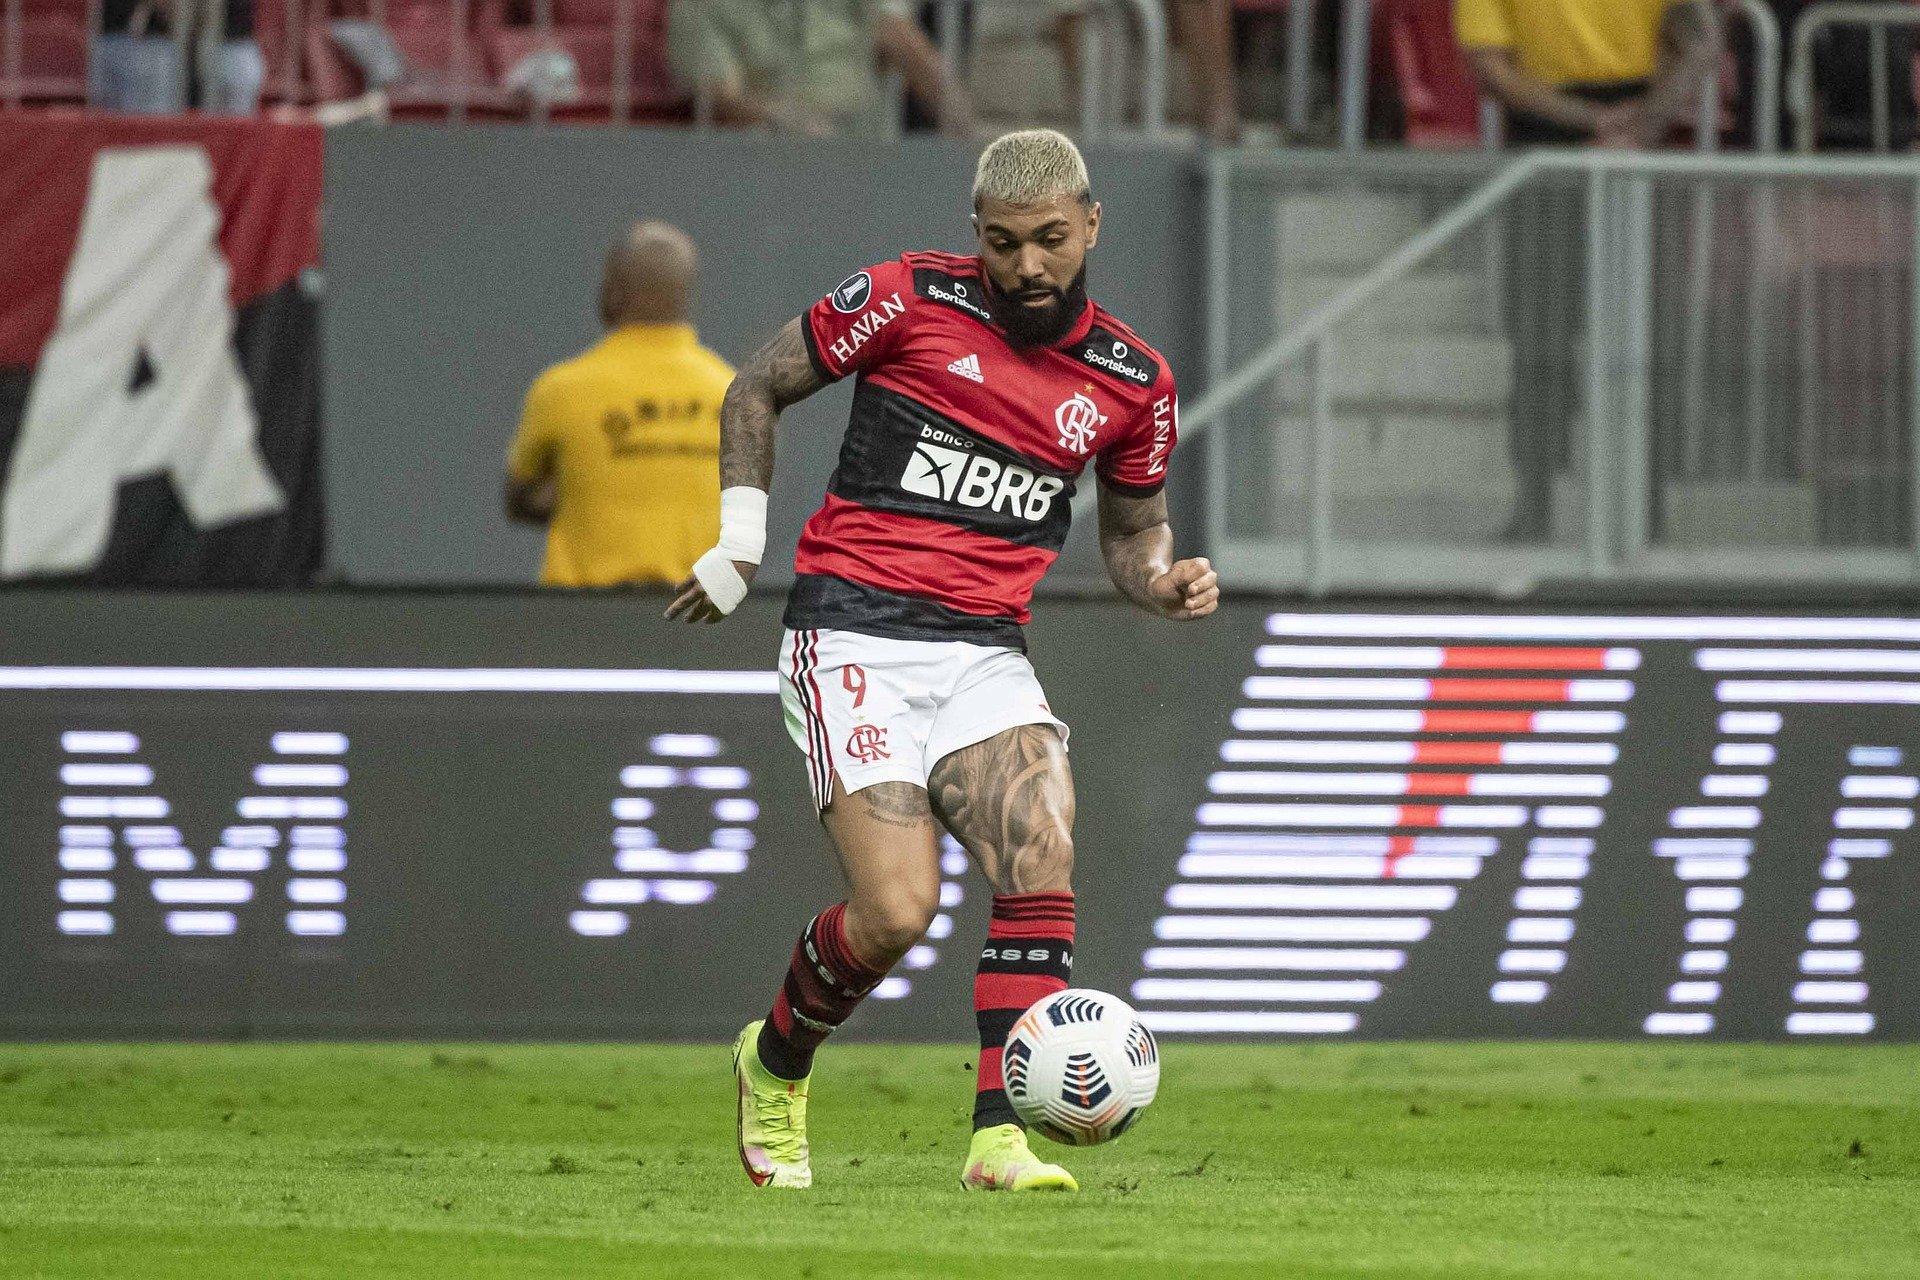 O Flamengo é finalista da Libertadores 2022. A final acontece neste sábado (26) às 17:00h. Você sabe onde apostar no Flamengo? Confira aqui!